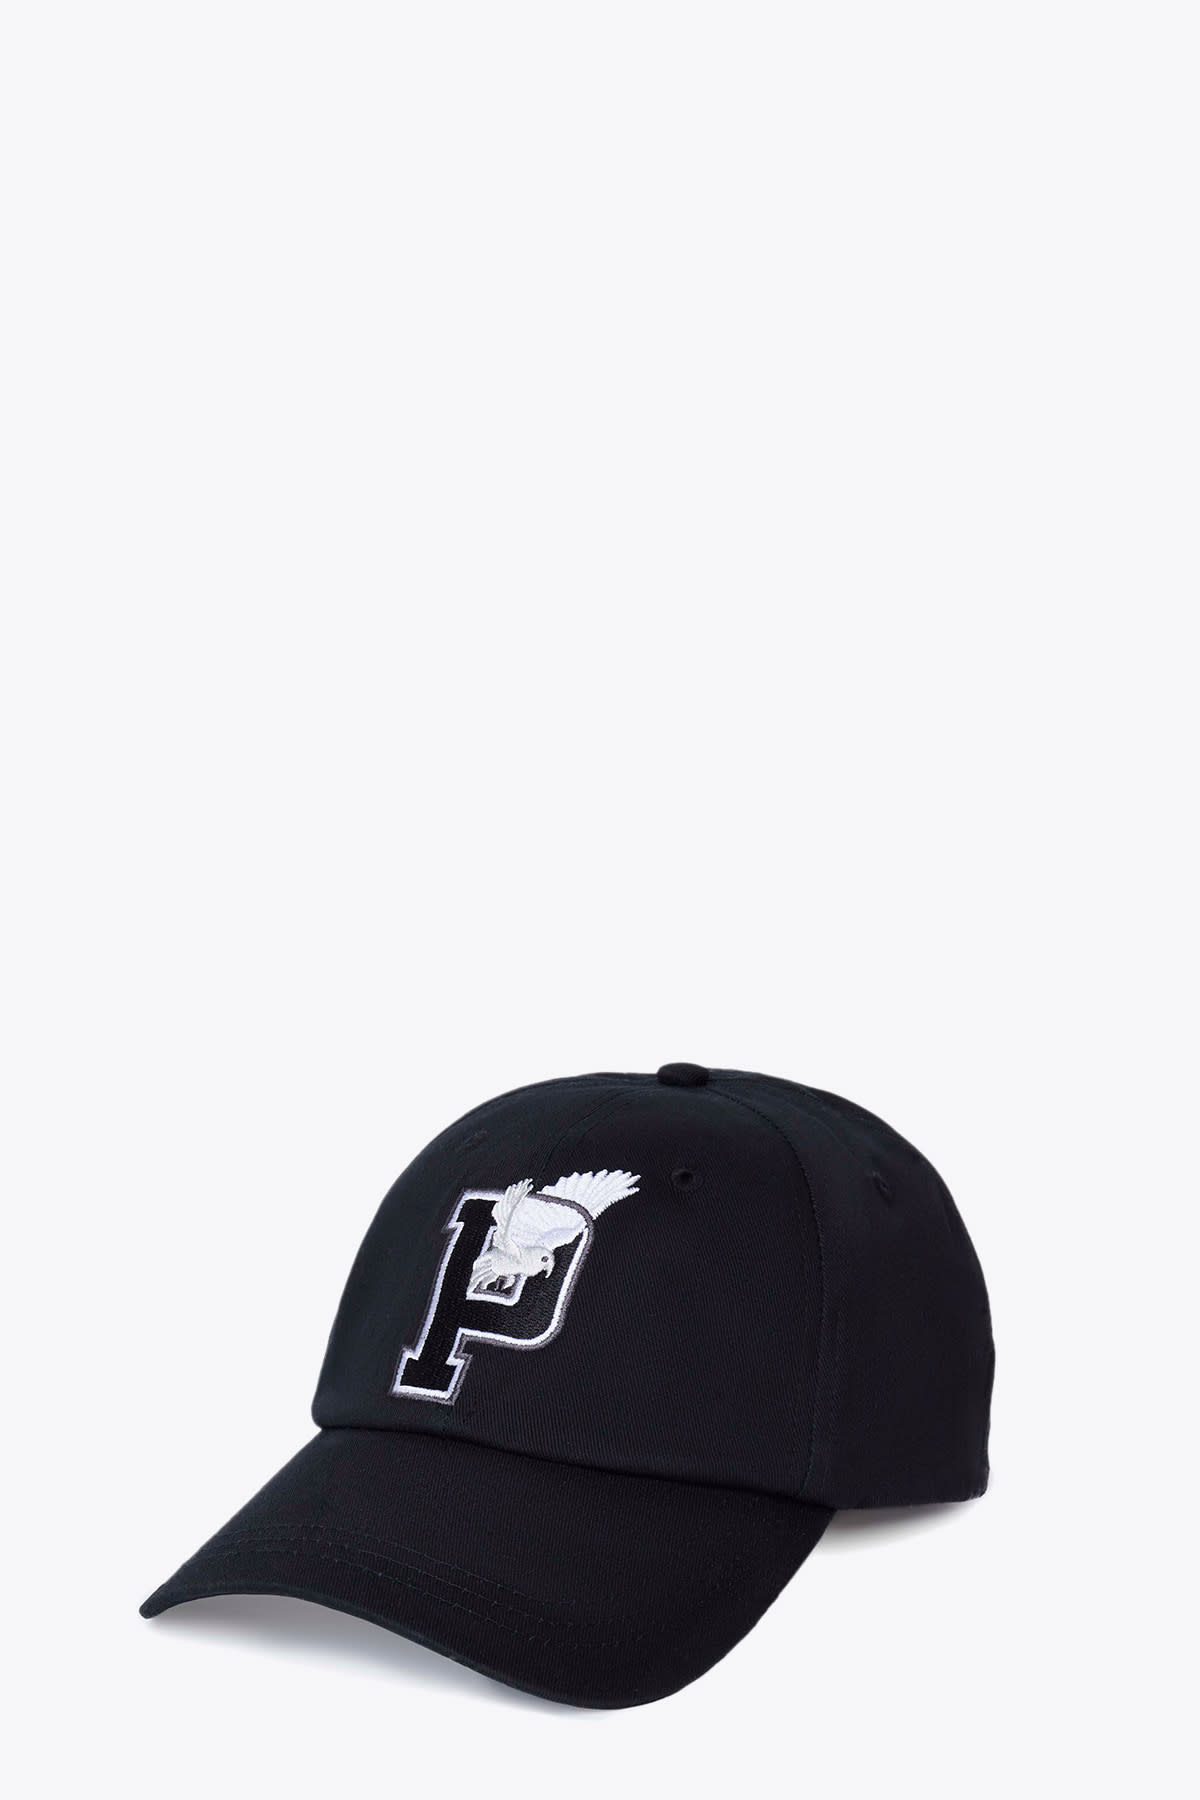 3.Paradis Letterman Cap Black cotton cap PSG collab - Letterman cap